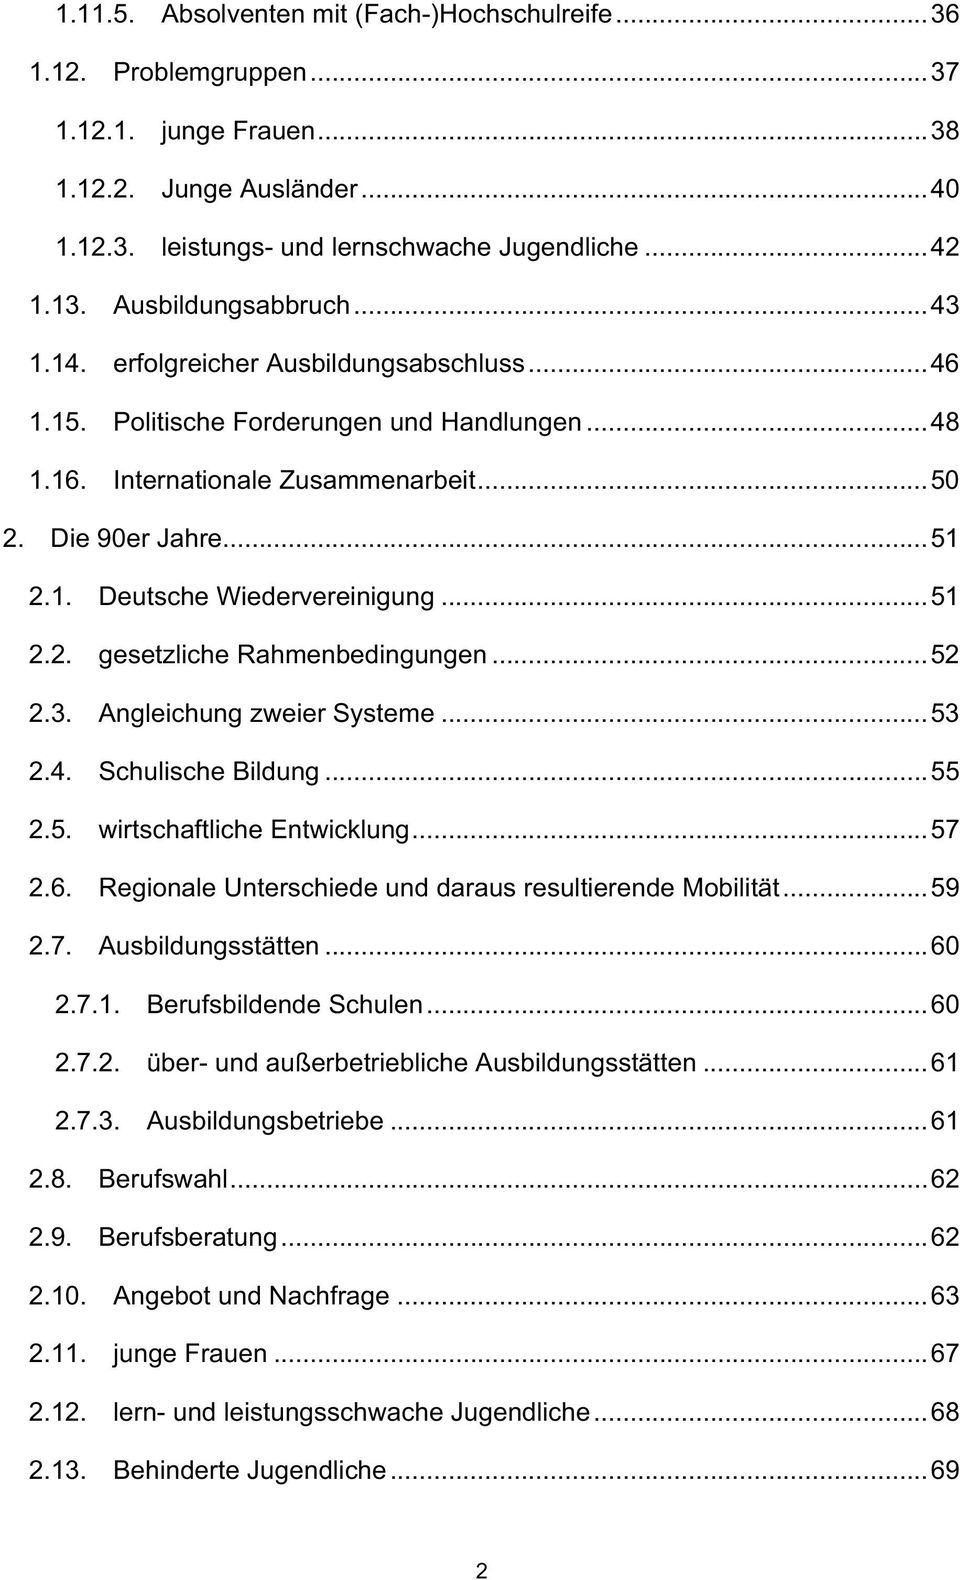 Deutsche Wiedervereinigung...51 gesetzliche Rahmenbedingungen...52 Angleichung zweier Systeme...53 Schulische Bildung...55 wirtschaftliche Entwicklung.